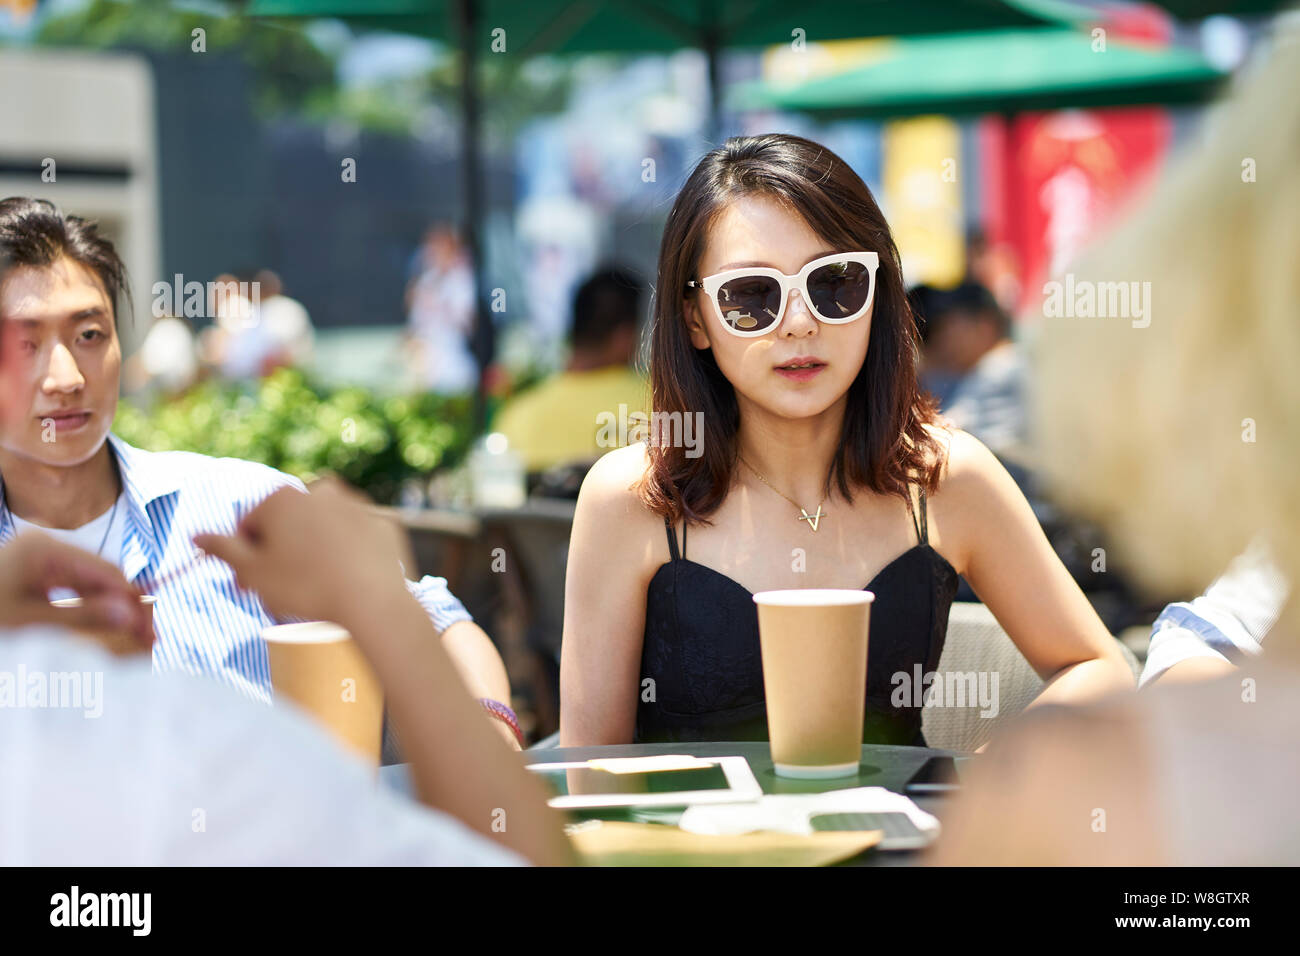 Los jóvenes asiáticos reunión de amigos adultos relajarse en la cafetería al aire libre Foto de stock